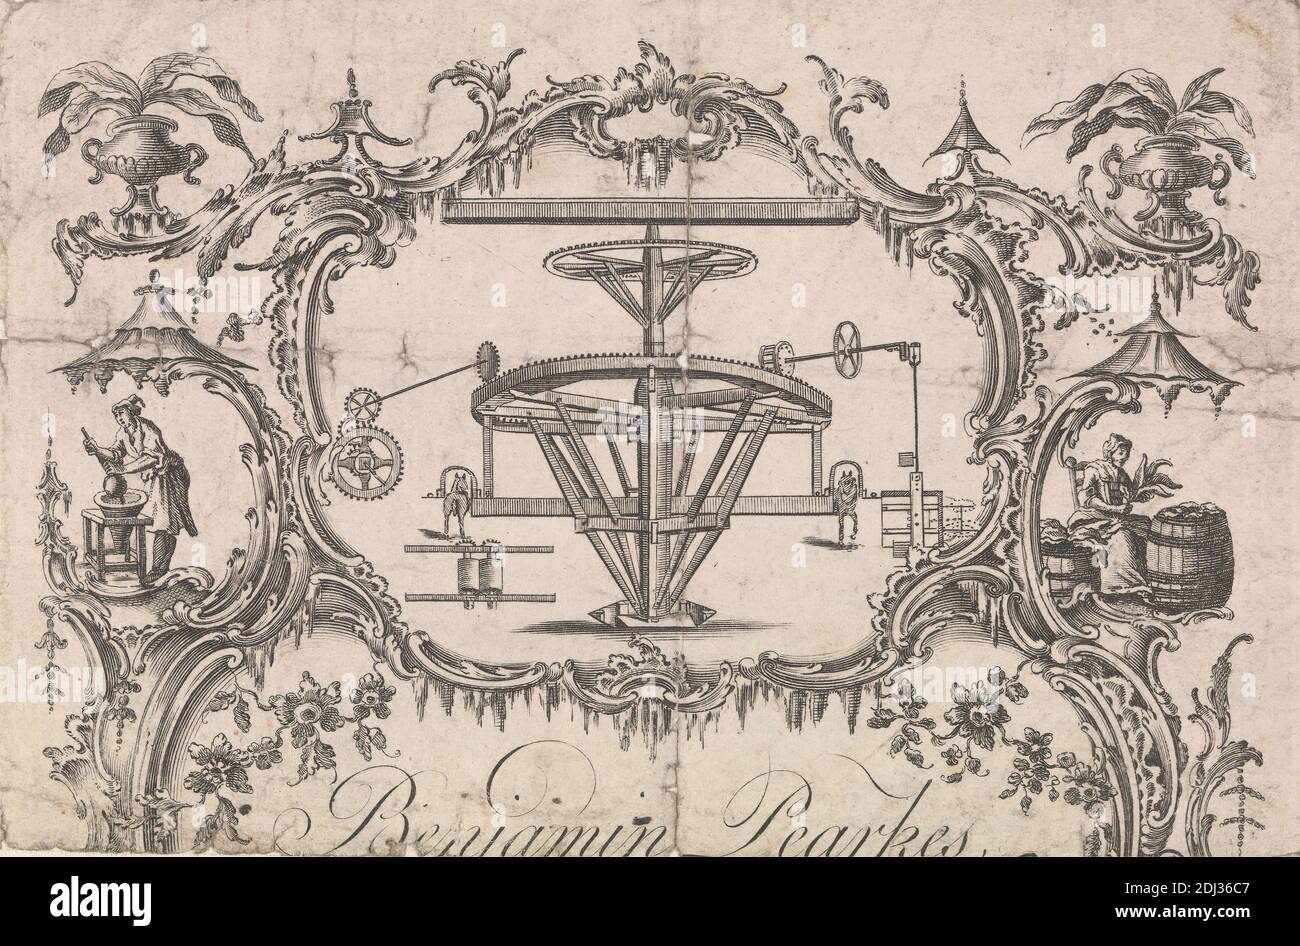 Handelskarte für Benjamin Pearkes, Maschinenhersteller, unbekannter Künstler, 18. Jahrhundert, ca. 1770 Stockfoto